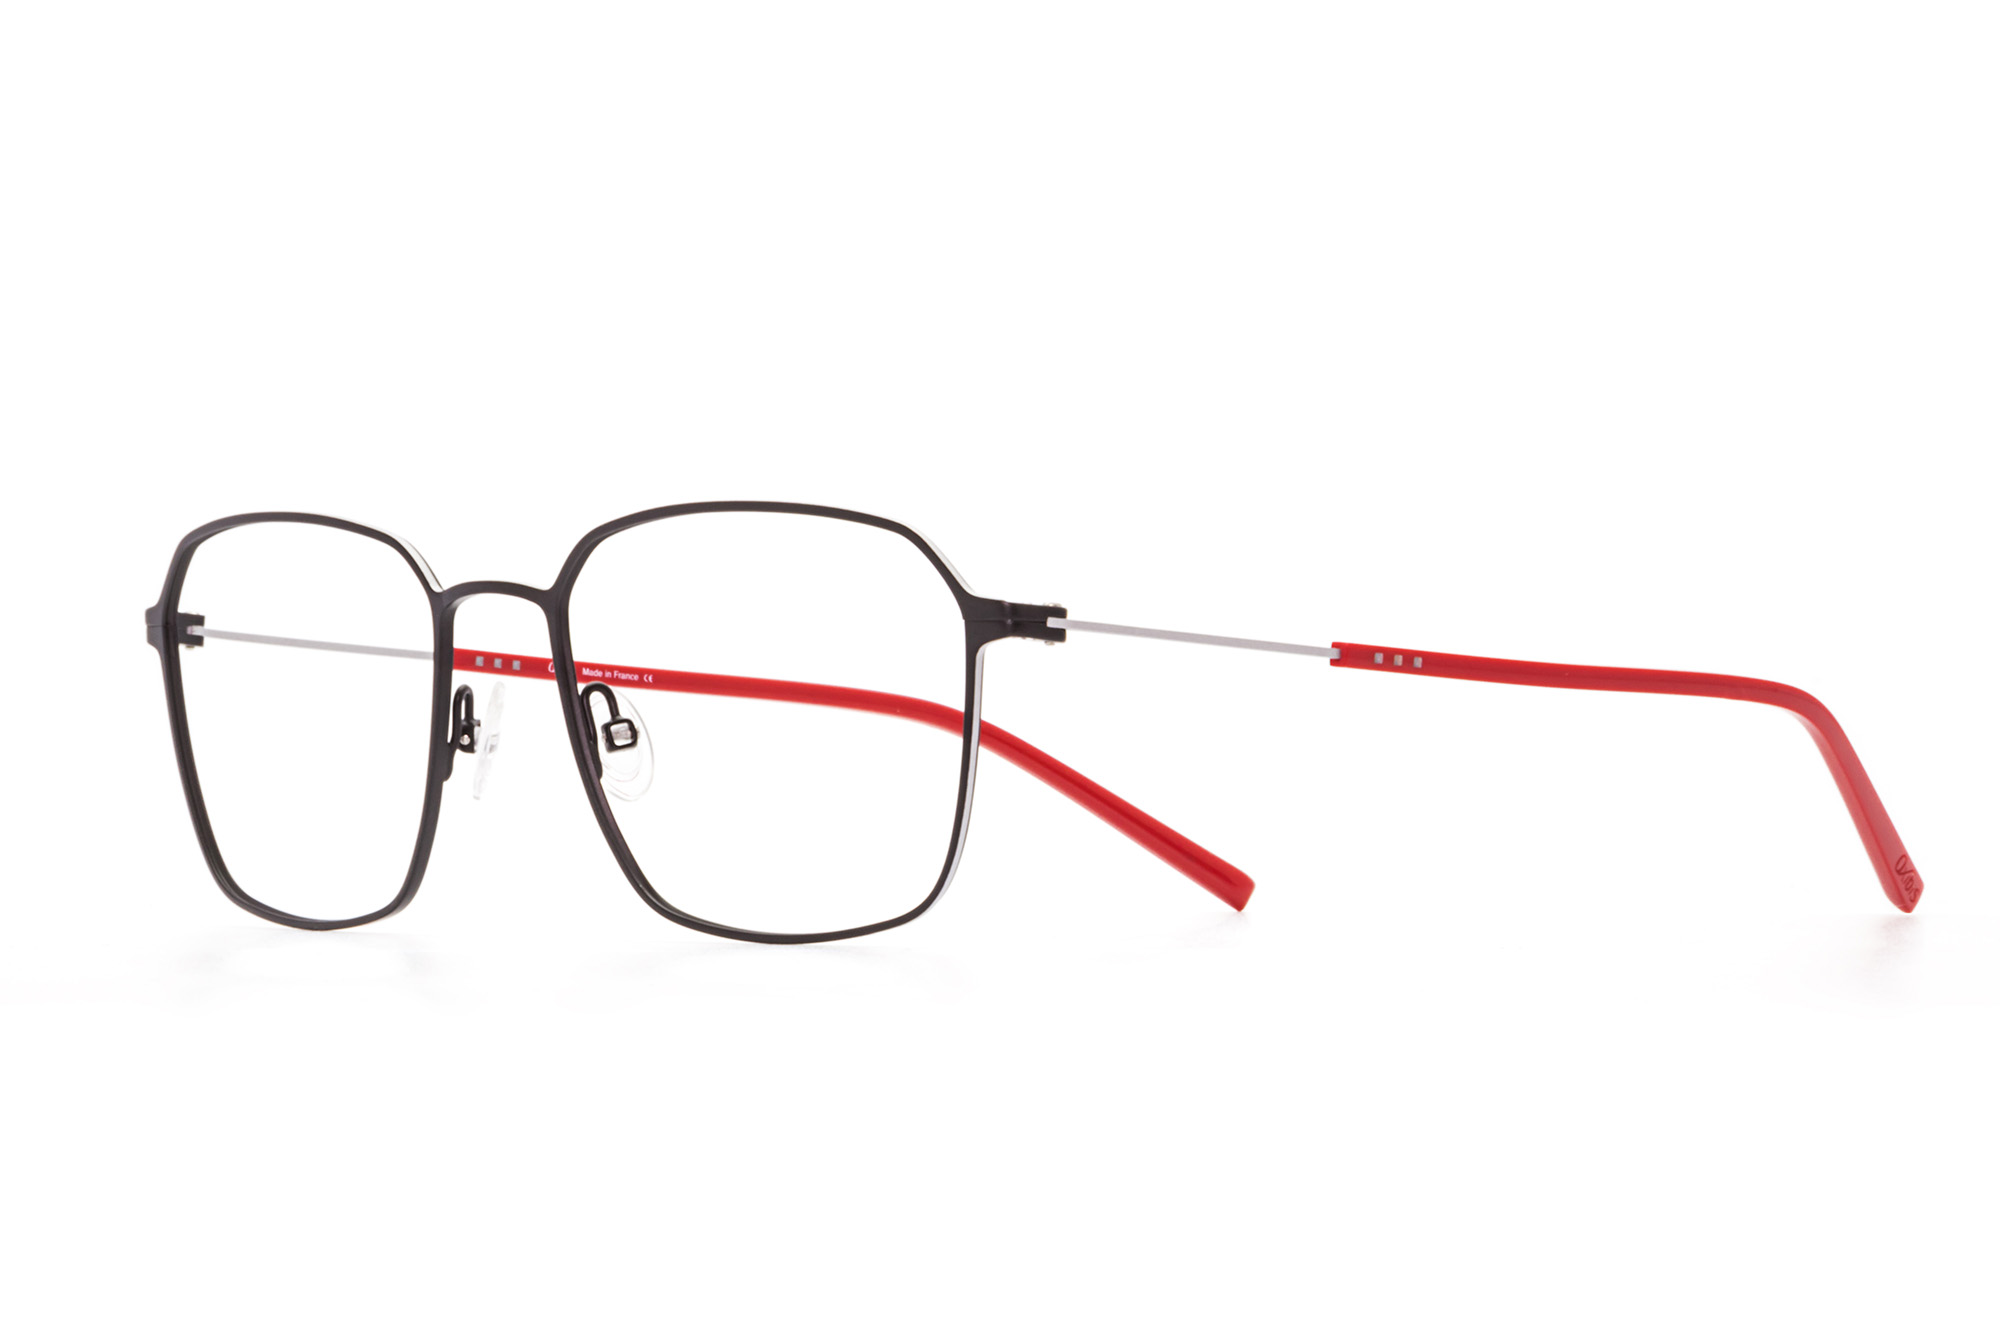 Kullanıma hazır optik tarzda işlenmiş camları ve optik uyumlu çerçevesiyle Oxibis Boost BO5C4 55 büyük ekartman siyah, gümüş ve kırmızı renkli altıgen ve dikdörtgen model erkek gözlüğünü optisyen veya gözlükçülerin sunacağı numarasız veya numaralı cam özelleştirmeleriyle size en yakın gözlükçüden satın alabilirsiniz.